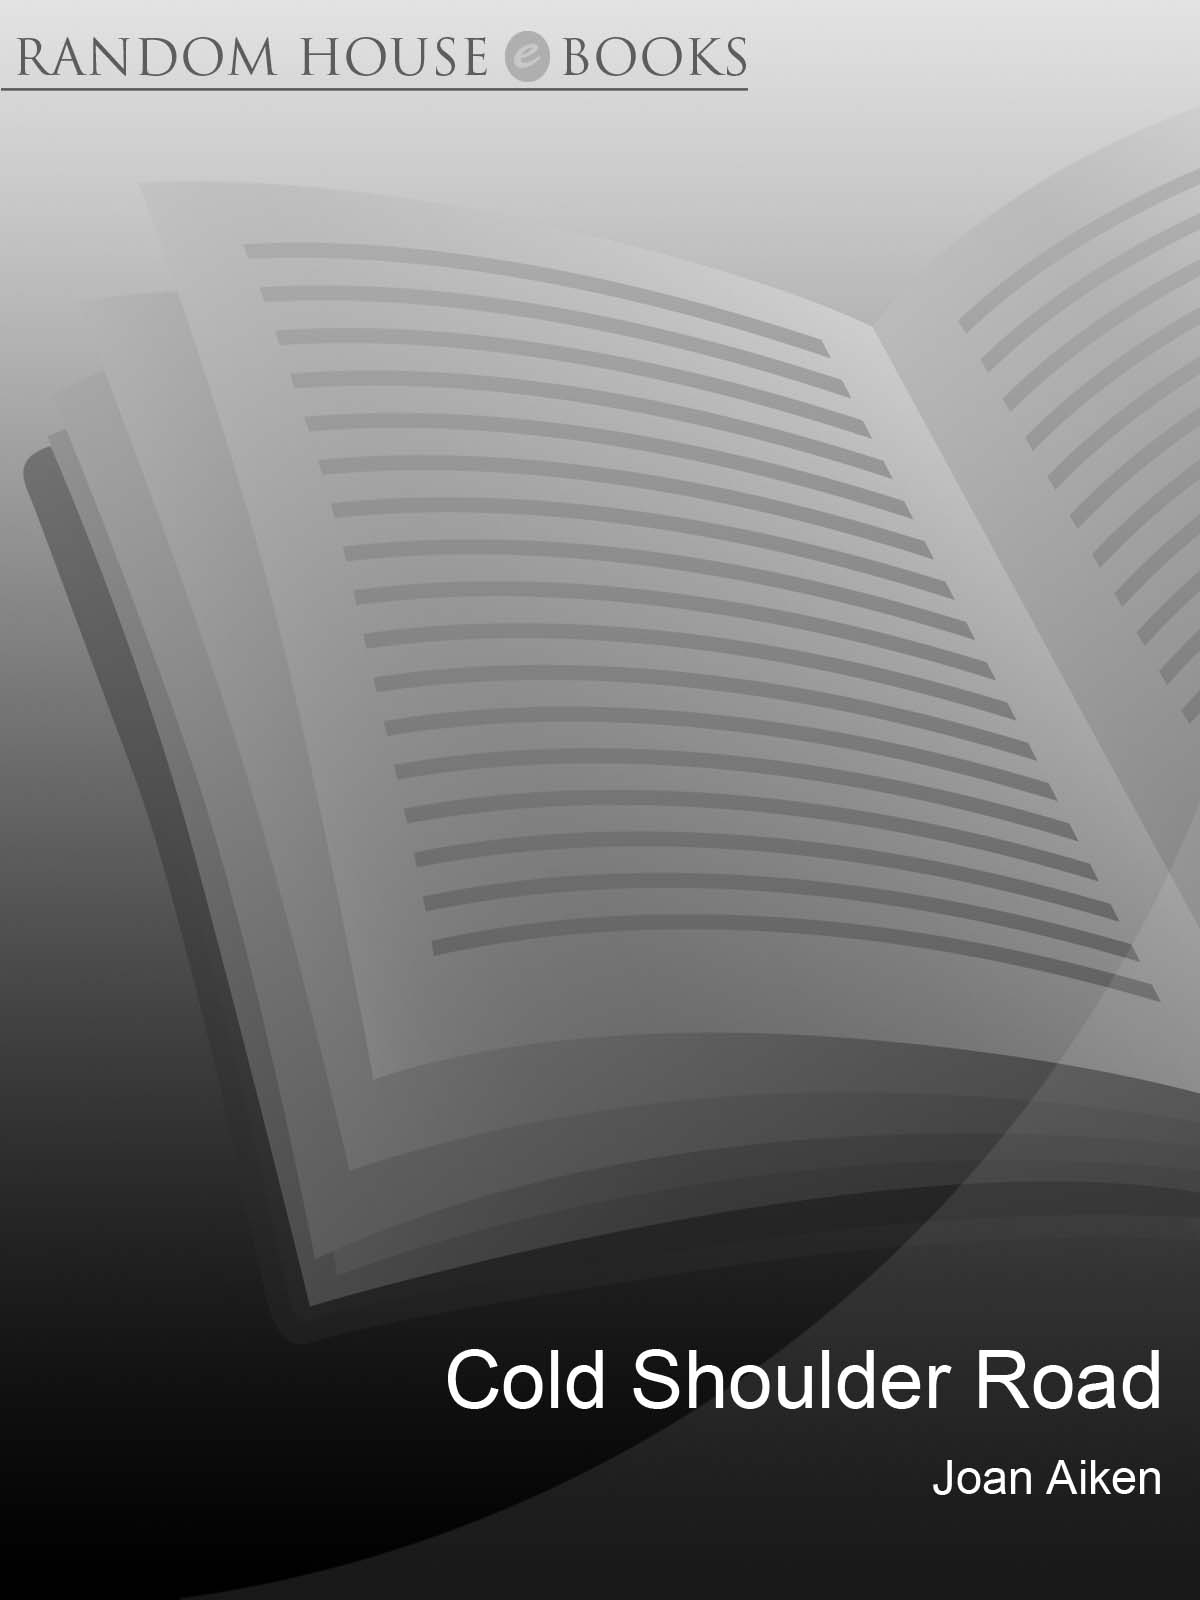 Cold Shoulder Road (2010) by Joan Aiken